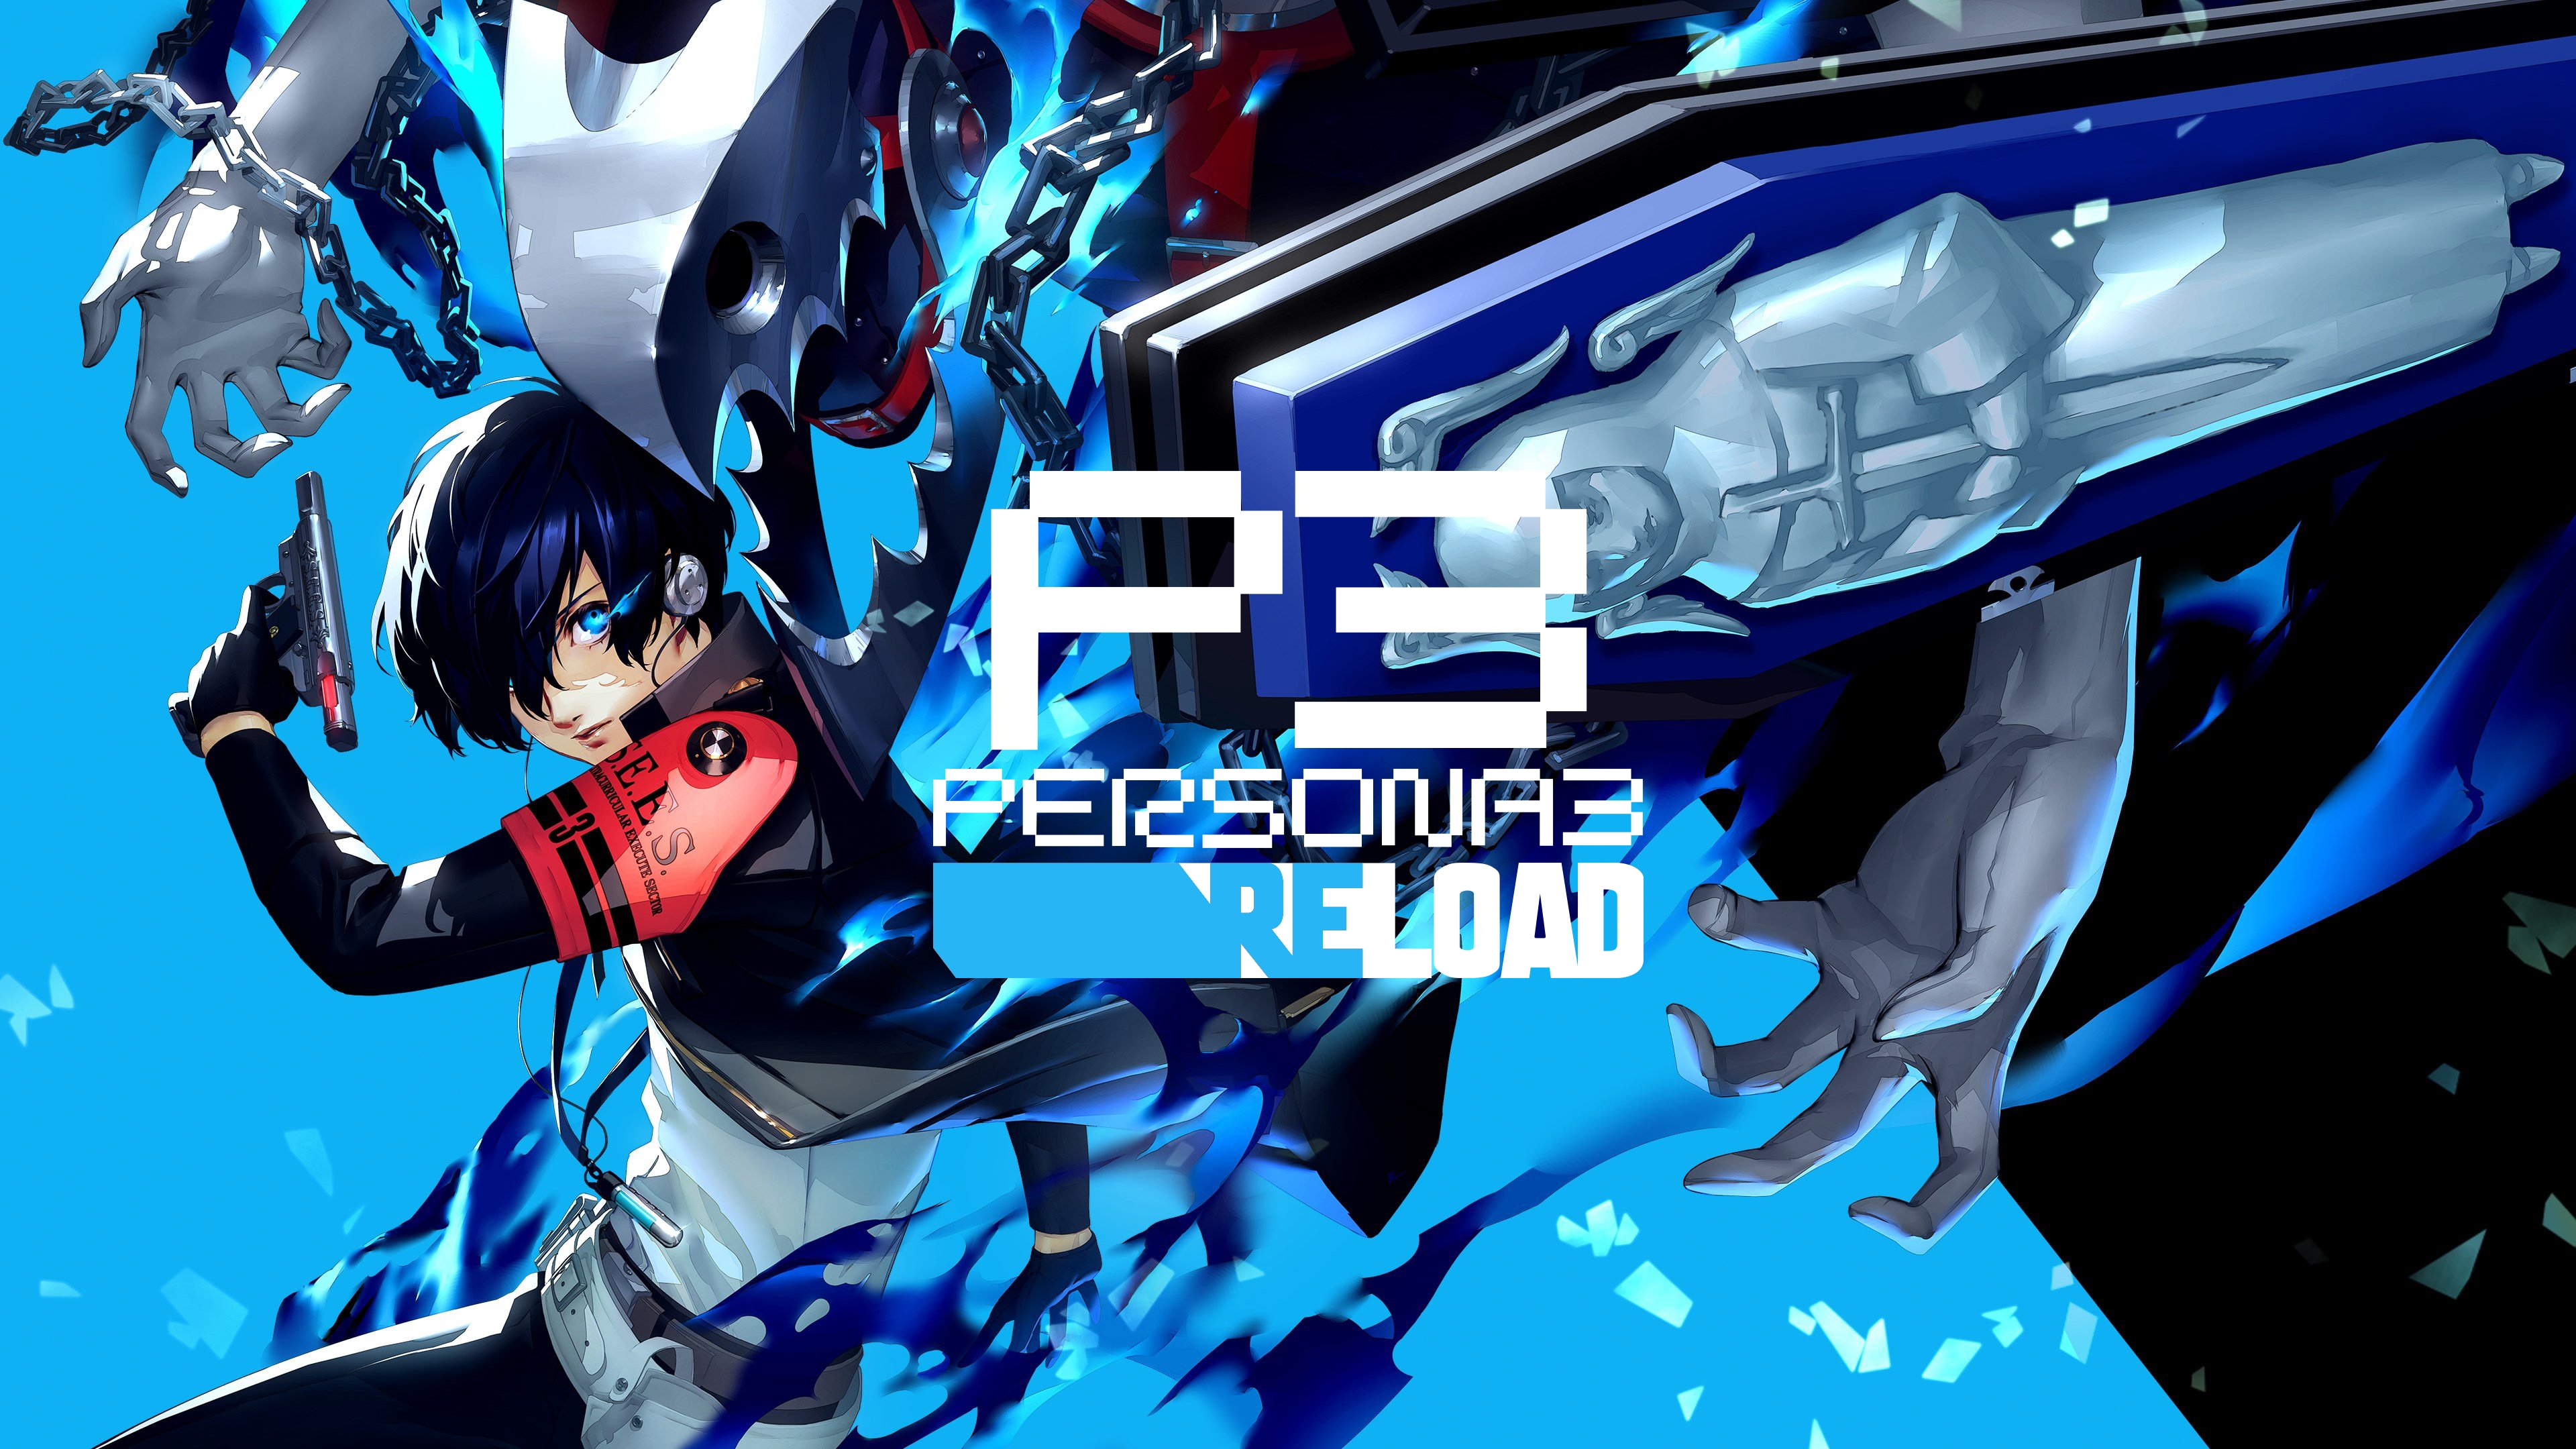 Die Anzahl der verkauften Exemplare von Persona 3 Reload hat in der ersten Woche die Millionengrenze überschritten.